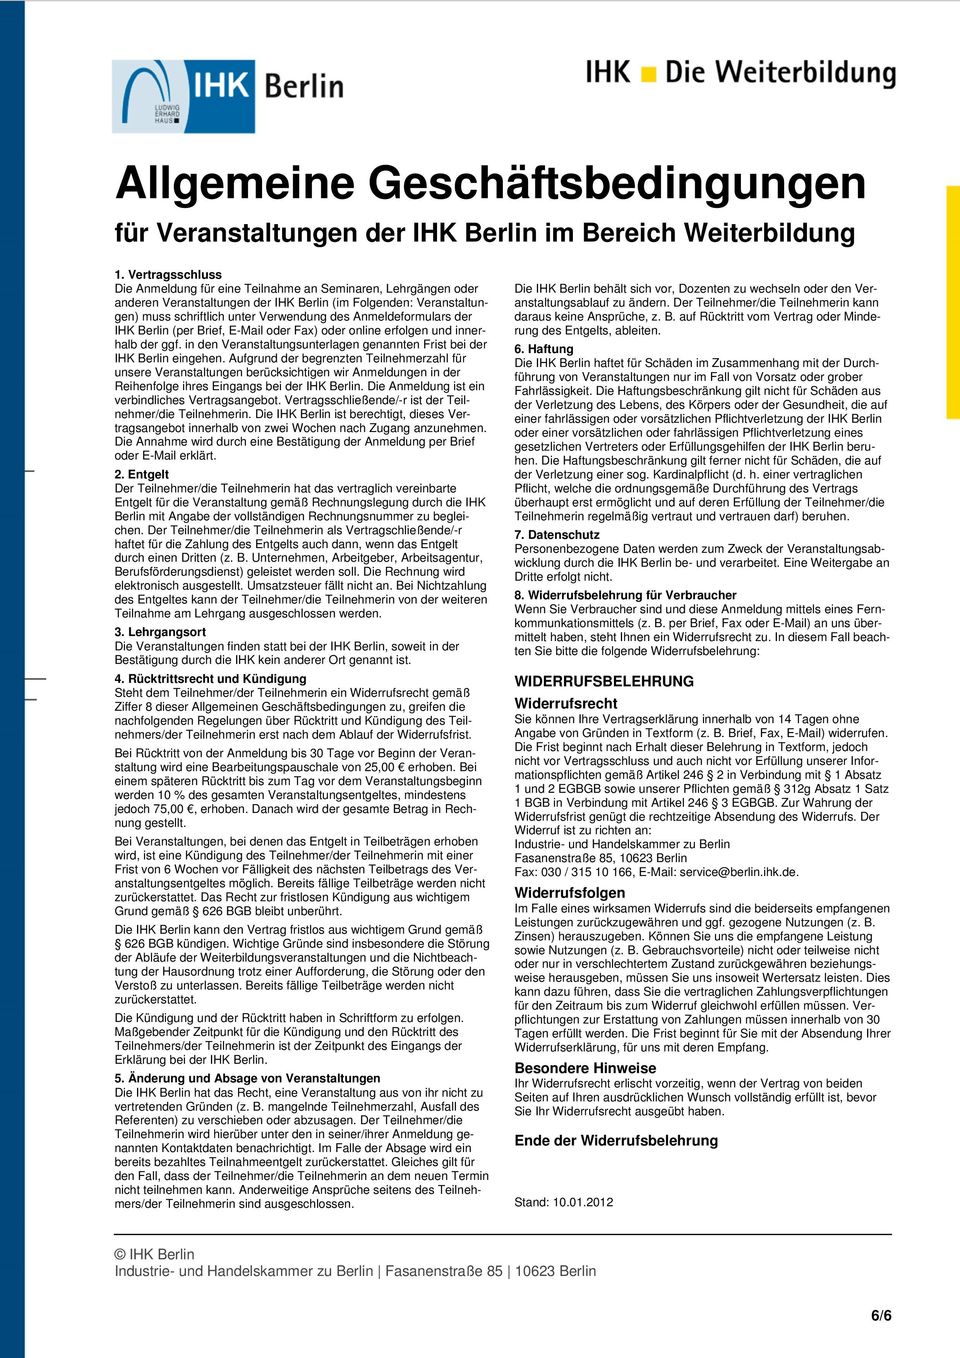 Anmeldeformulars der IHK Berlin (per Brief, E-Mail oder Fax) oder online erfolgen und innerhalb der ggf. in den Veranstaltungsunterlagen genannten Frist bei der IHK Berlin eingehen.